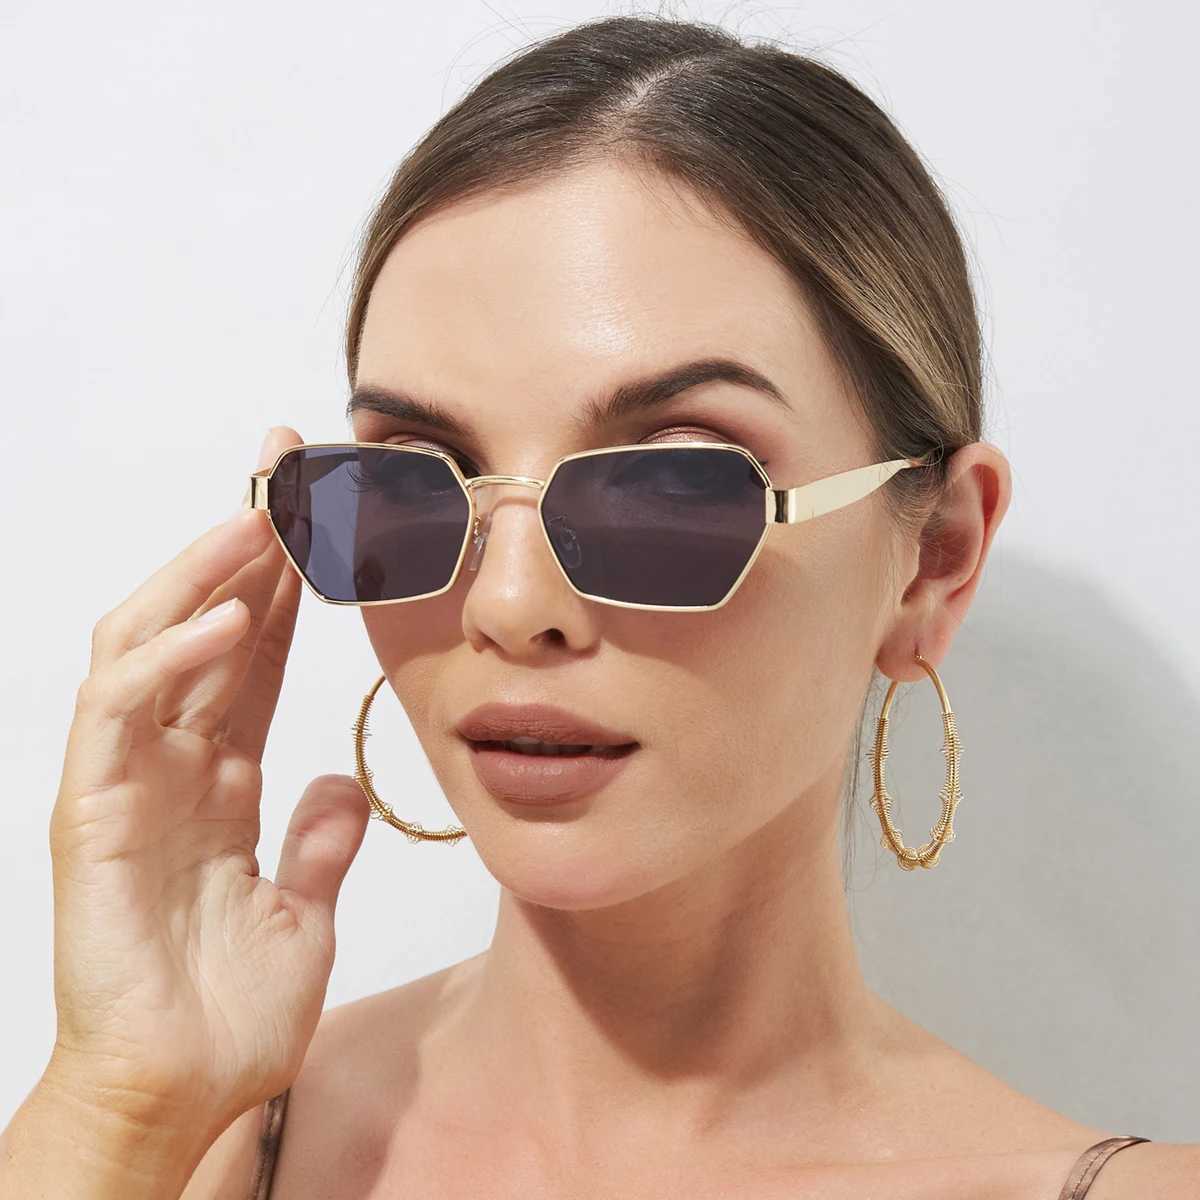 Lunettes de soleil nouvelle mode dame carrée montures en métal lunettes de soleil femmes lunettes de luxe marque lunettes de soleil femme UV400L2402